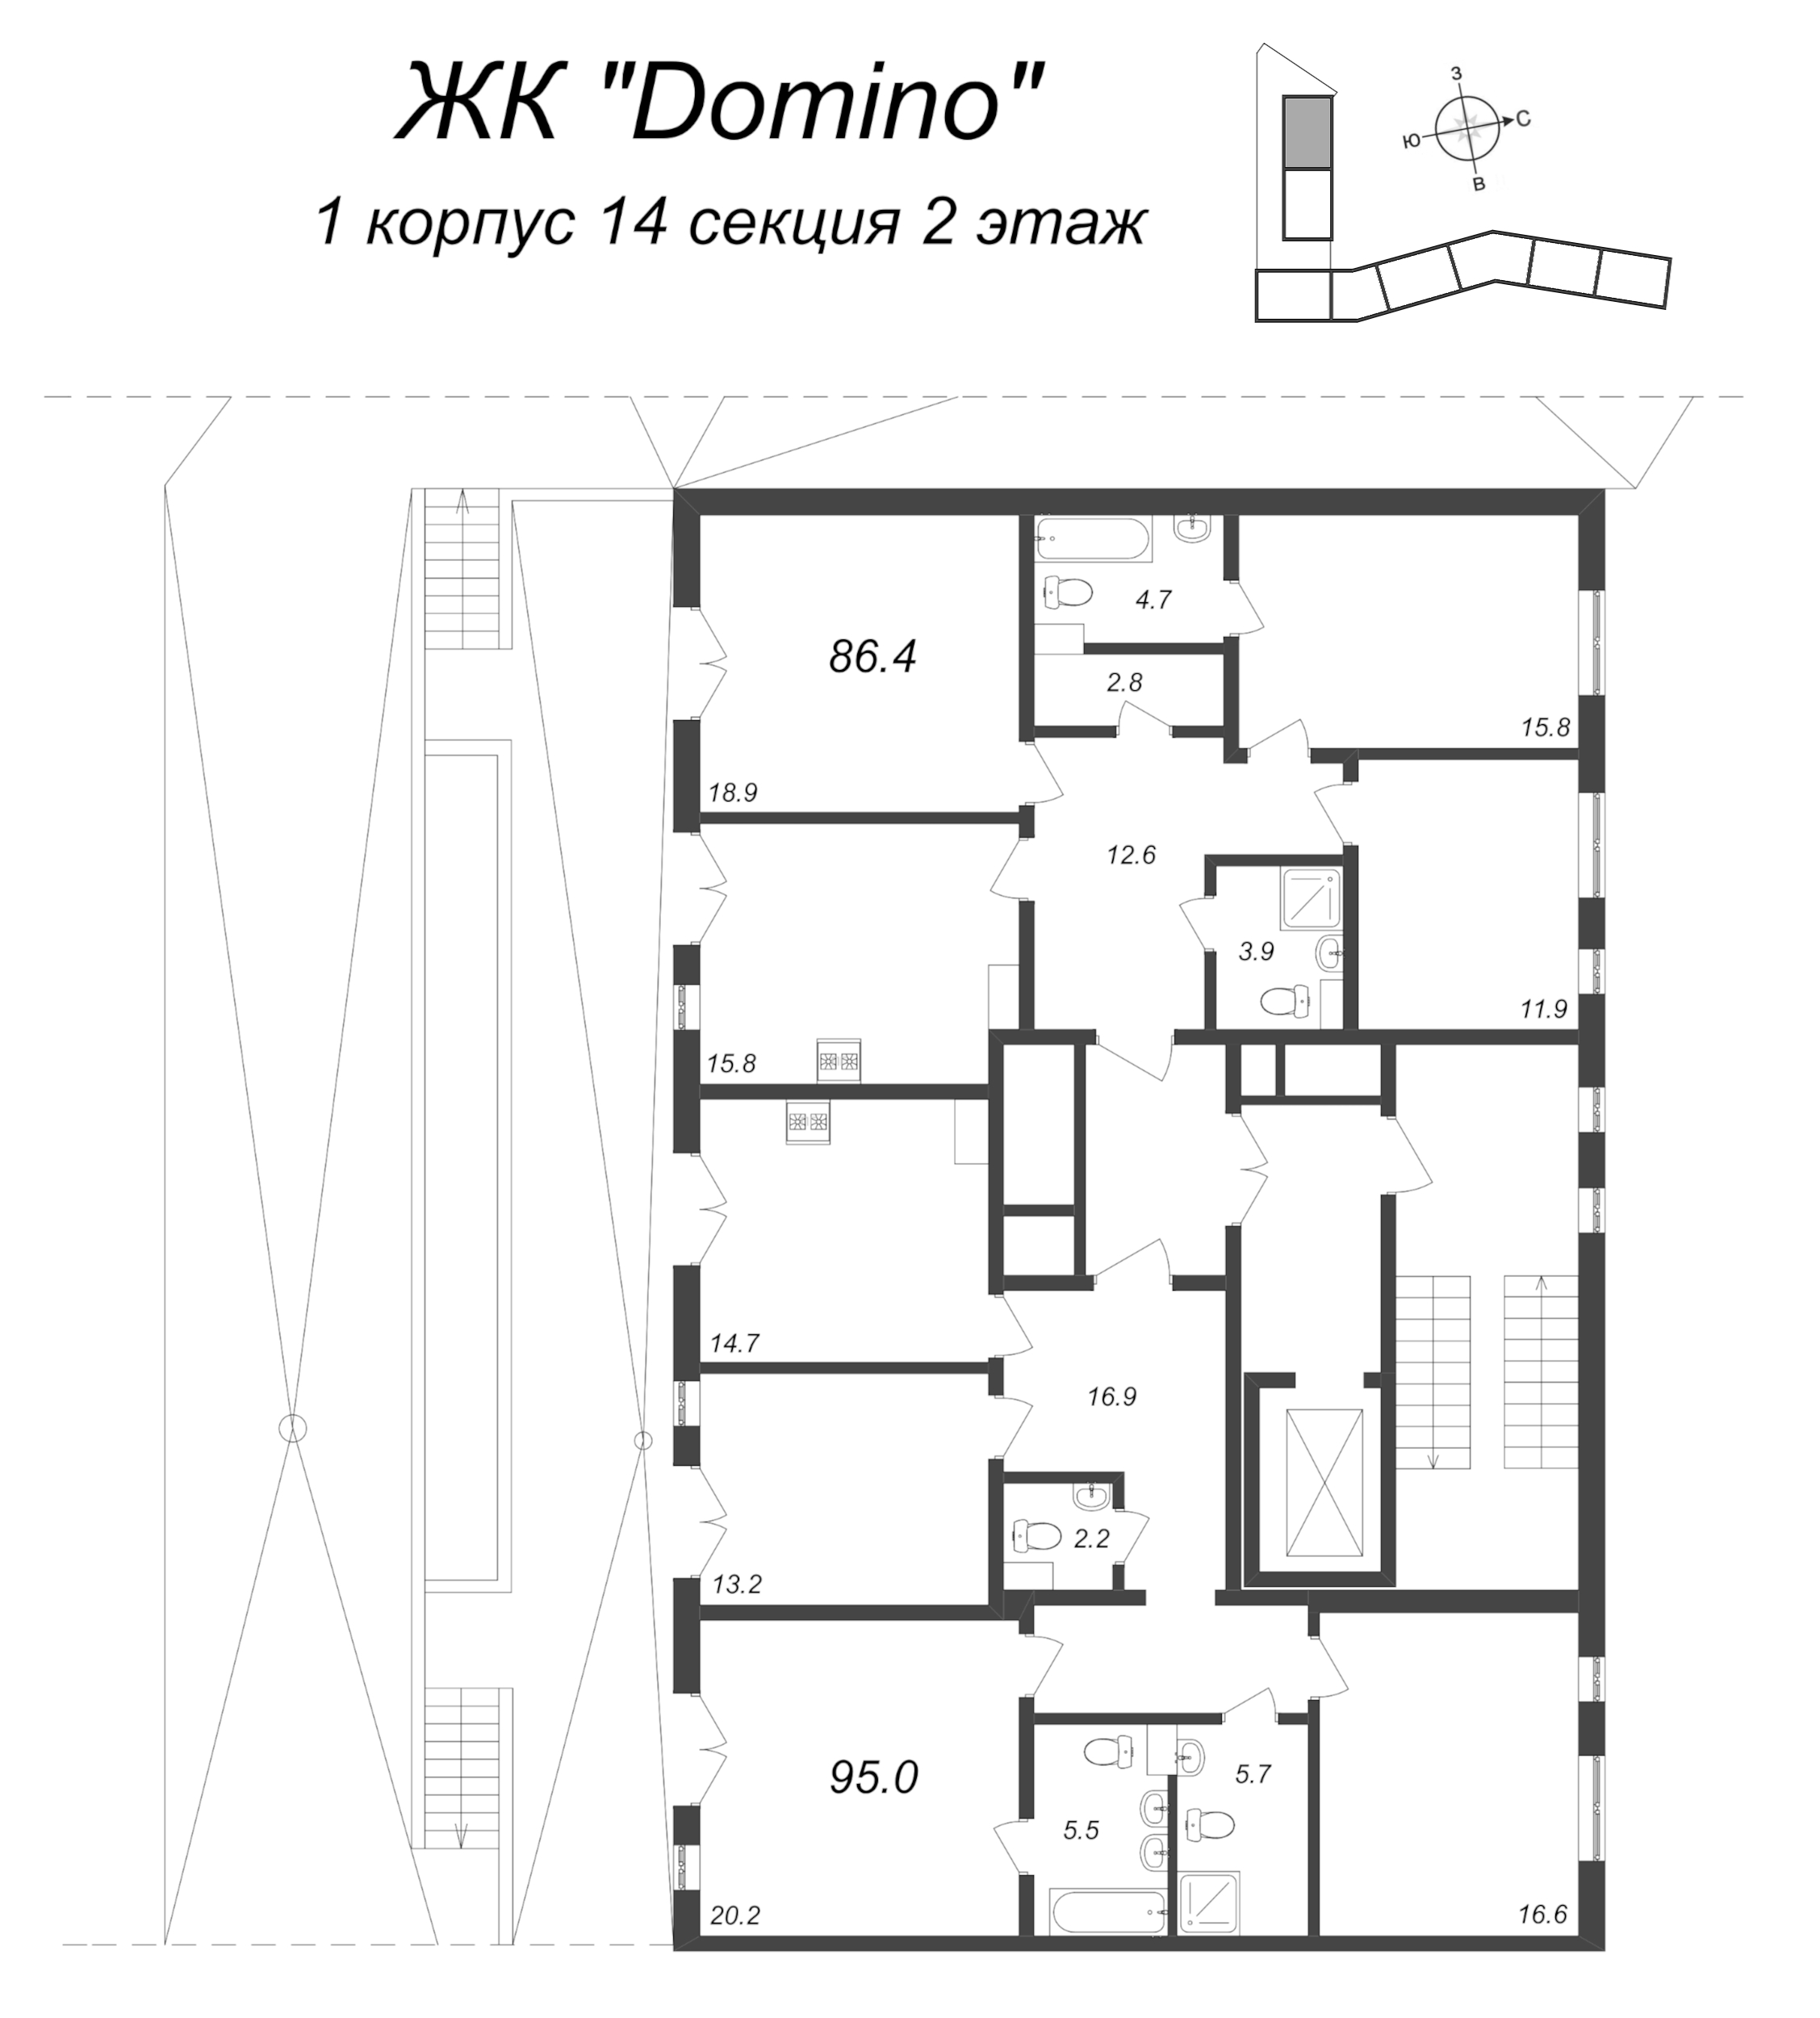 3-комнатная квартира, 86.4 м² в ЖК "Domino Premium" - планировка этажа